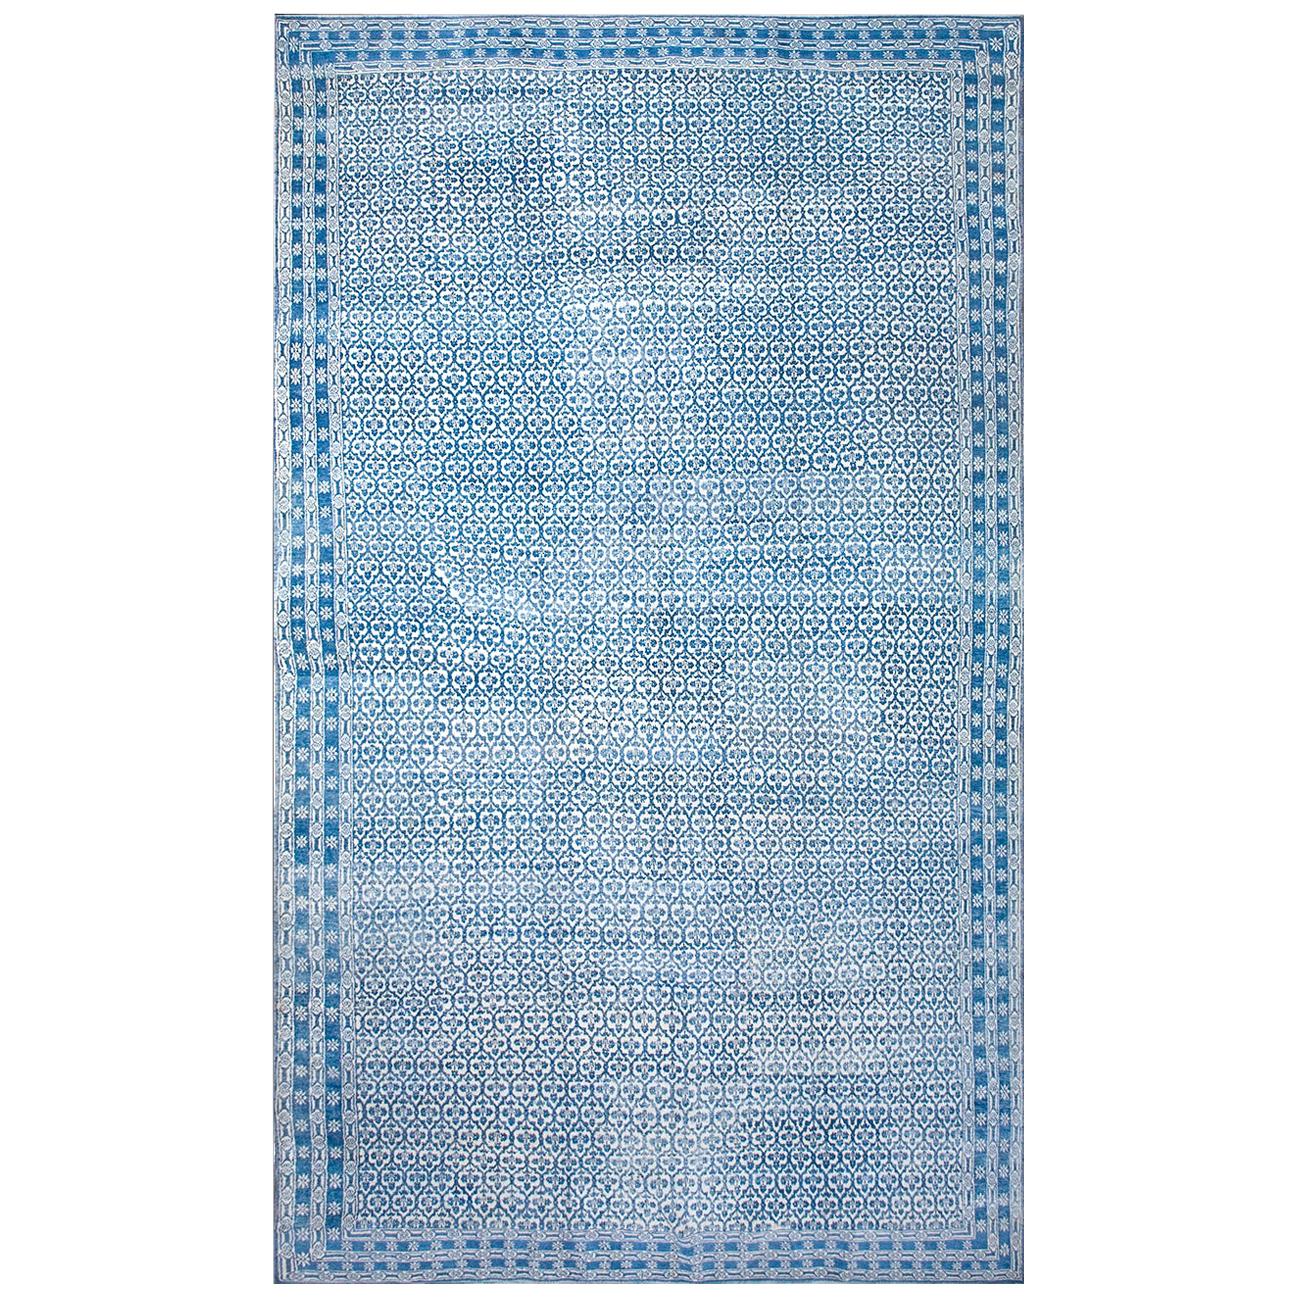 Indischer Agra-Teppich aus Baumwolle des frühen 20. Jahrhunderts ( 9' x 15'8" - 275 x 478")